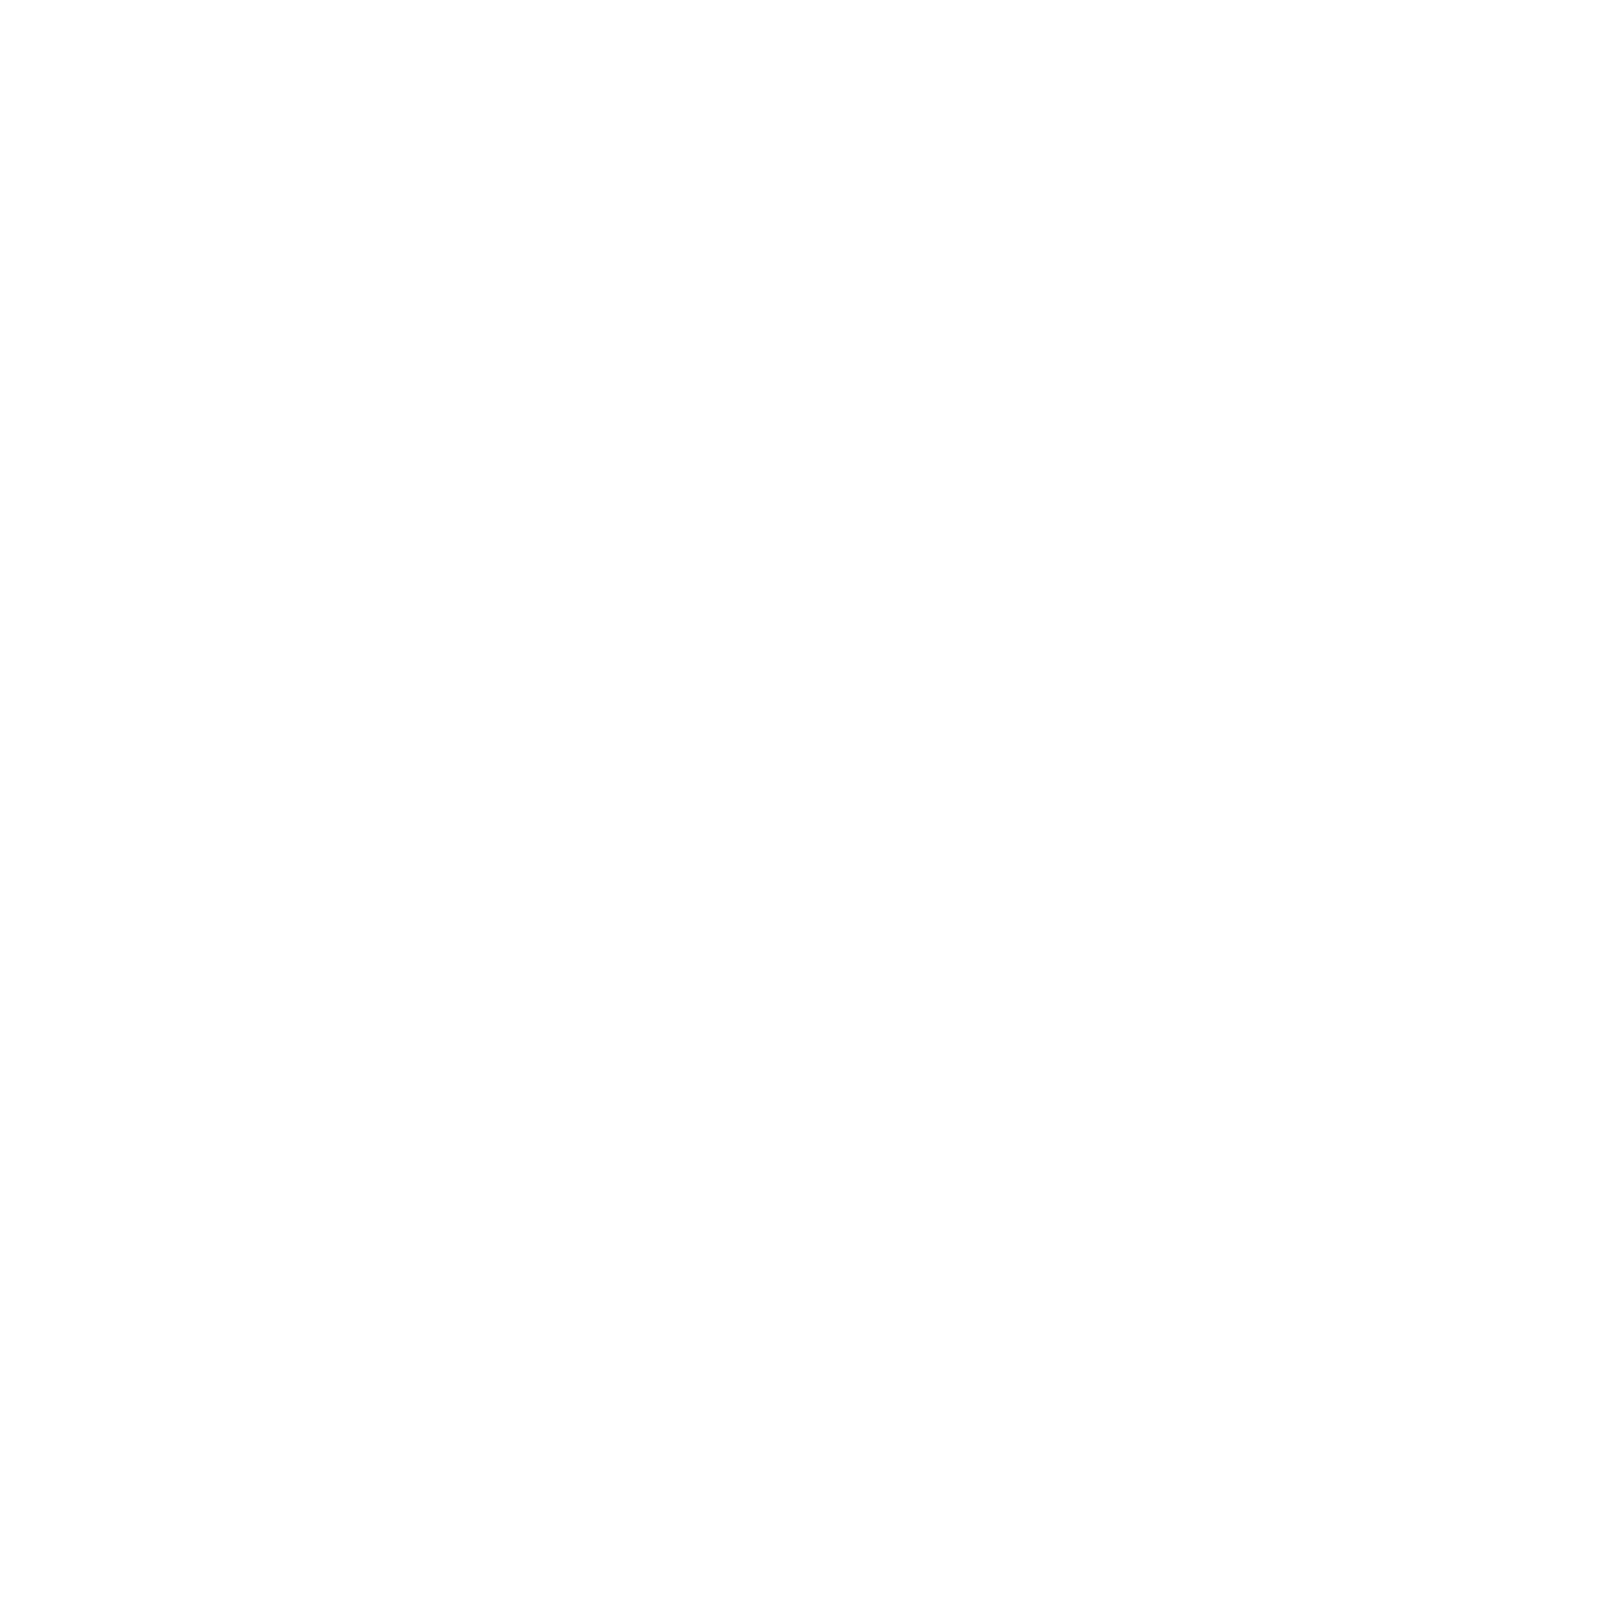 Pre-mix